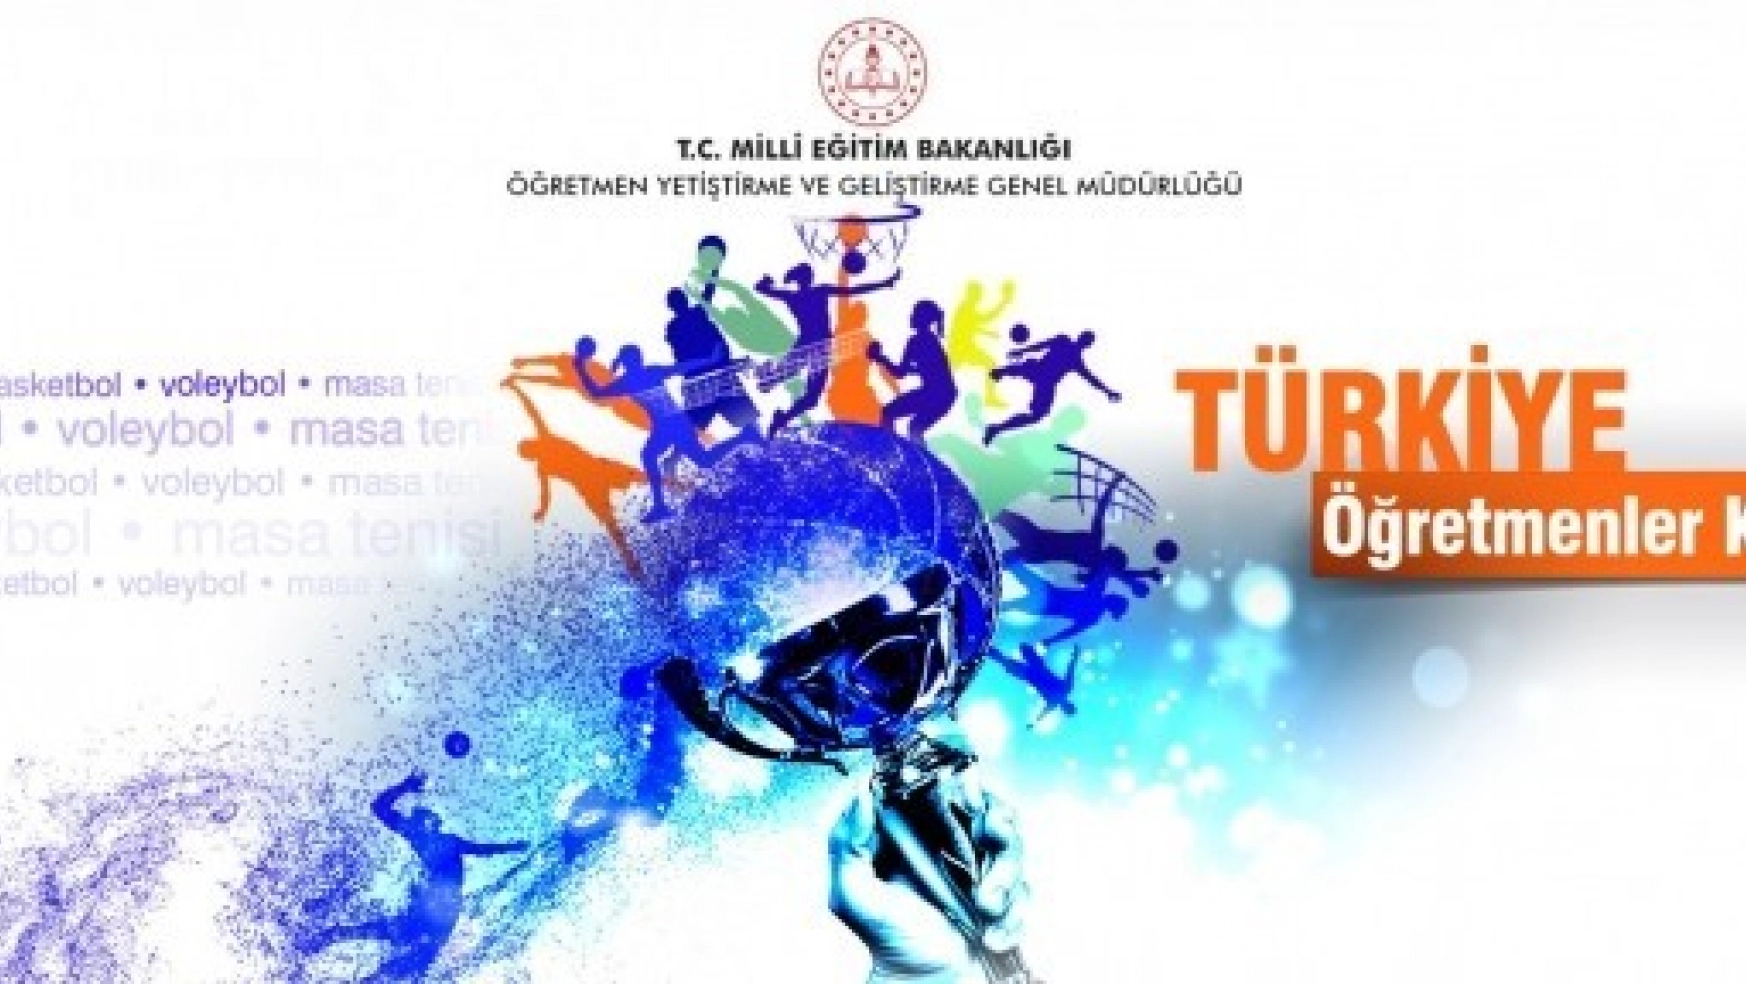 Türkiye Öğretmenler Kupası Turnuvası Başladı